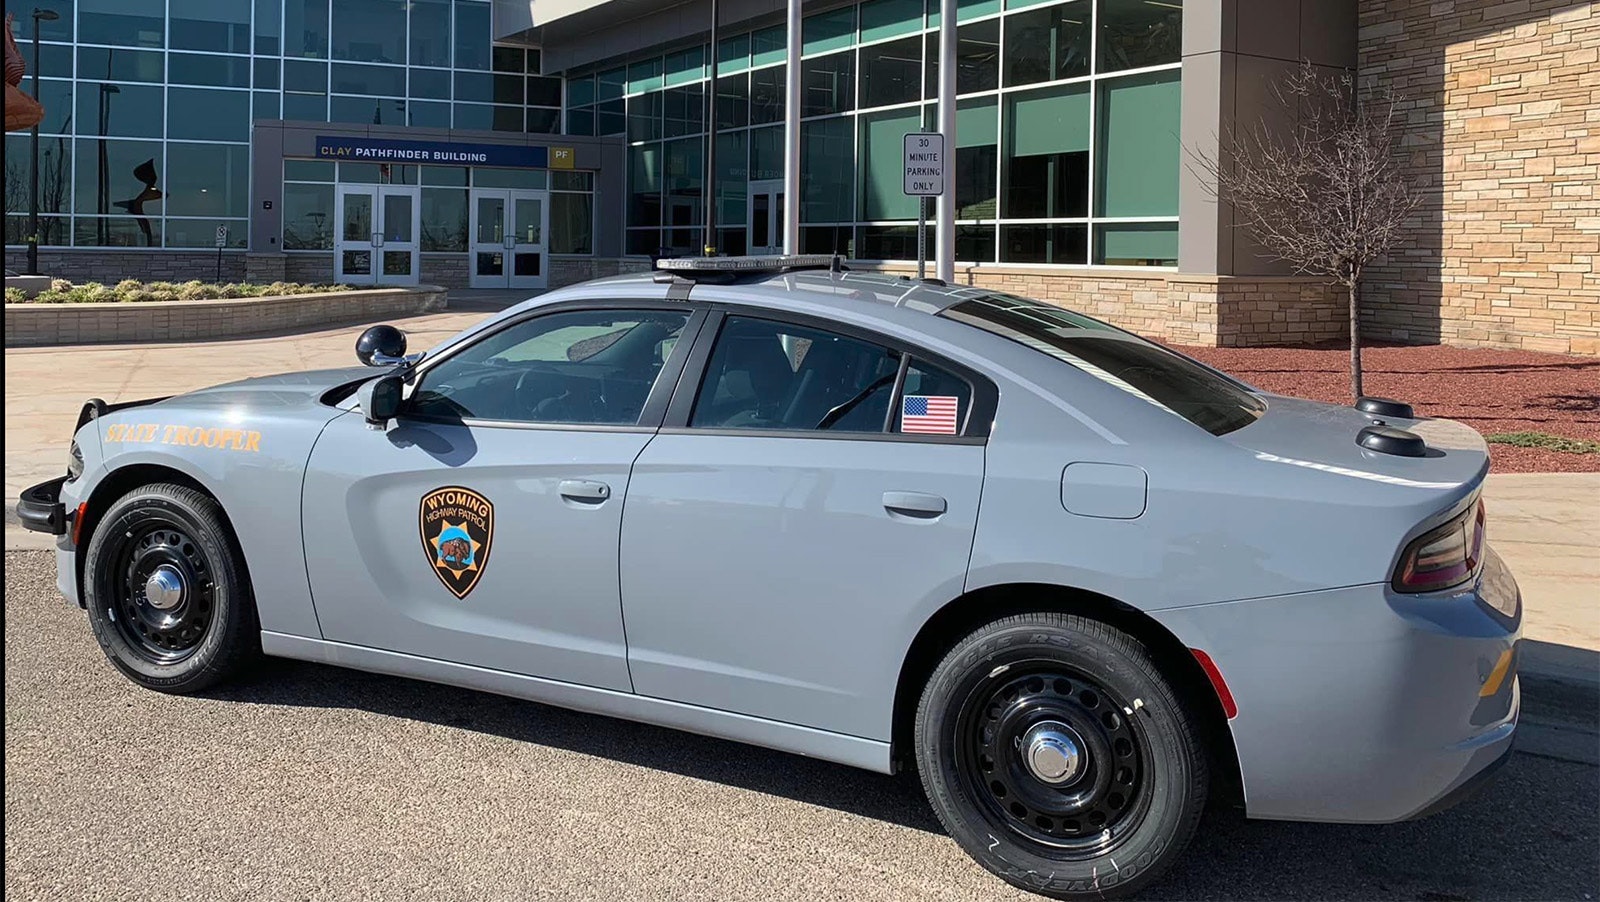 Wyoming Highway Patrol slate gray car 5 5 23